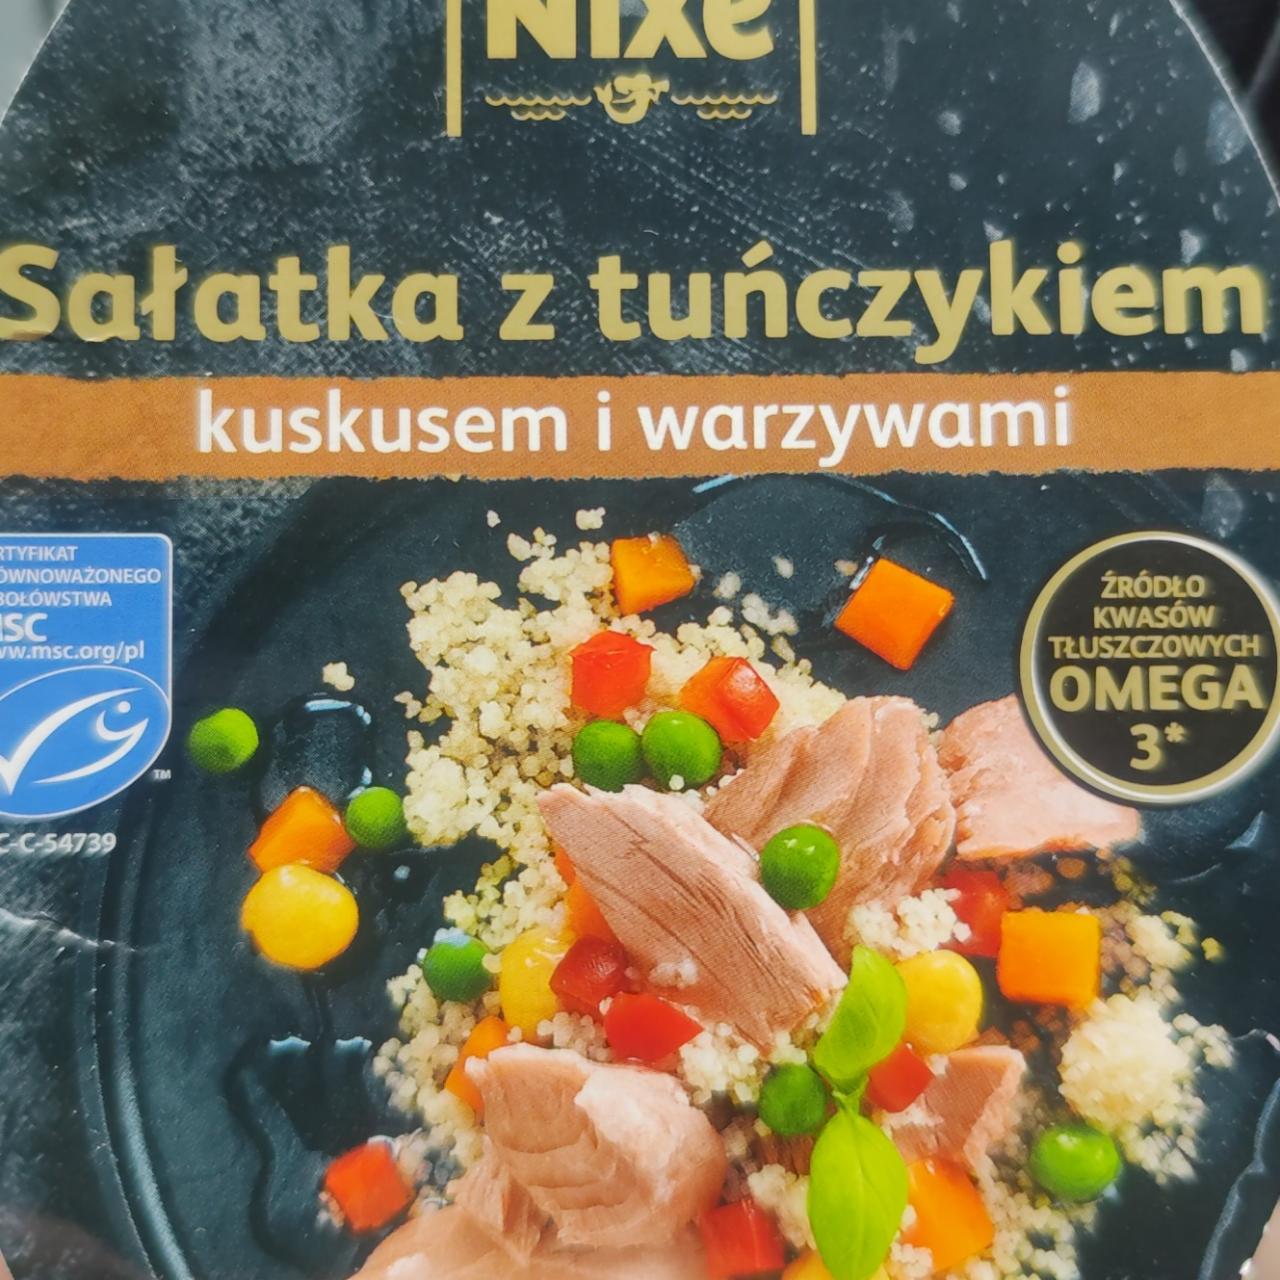 Fotografie - Salatka z tuńczykiem kuskusem i warzywami Nixe